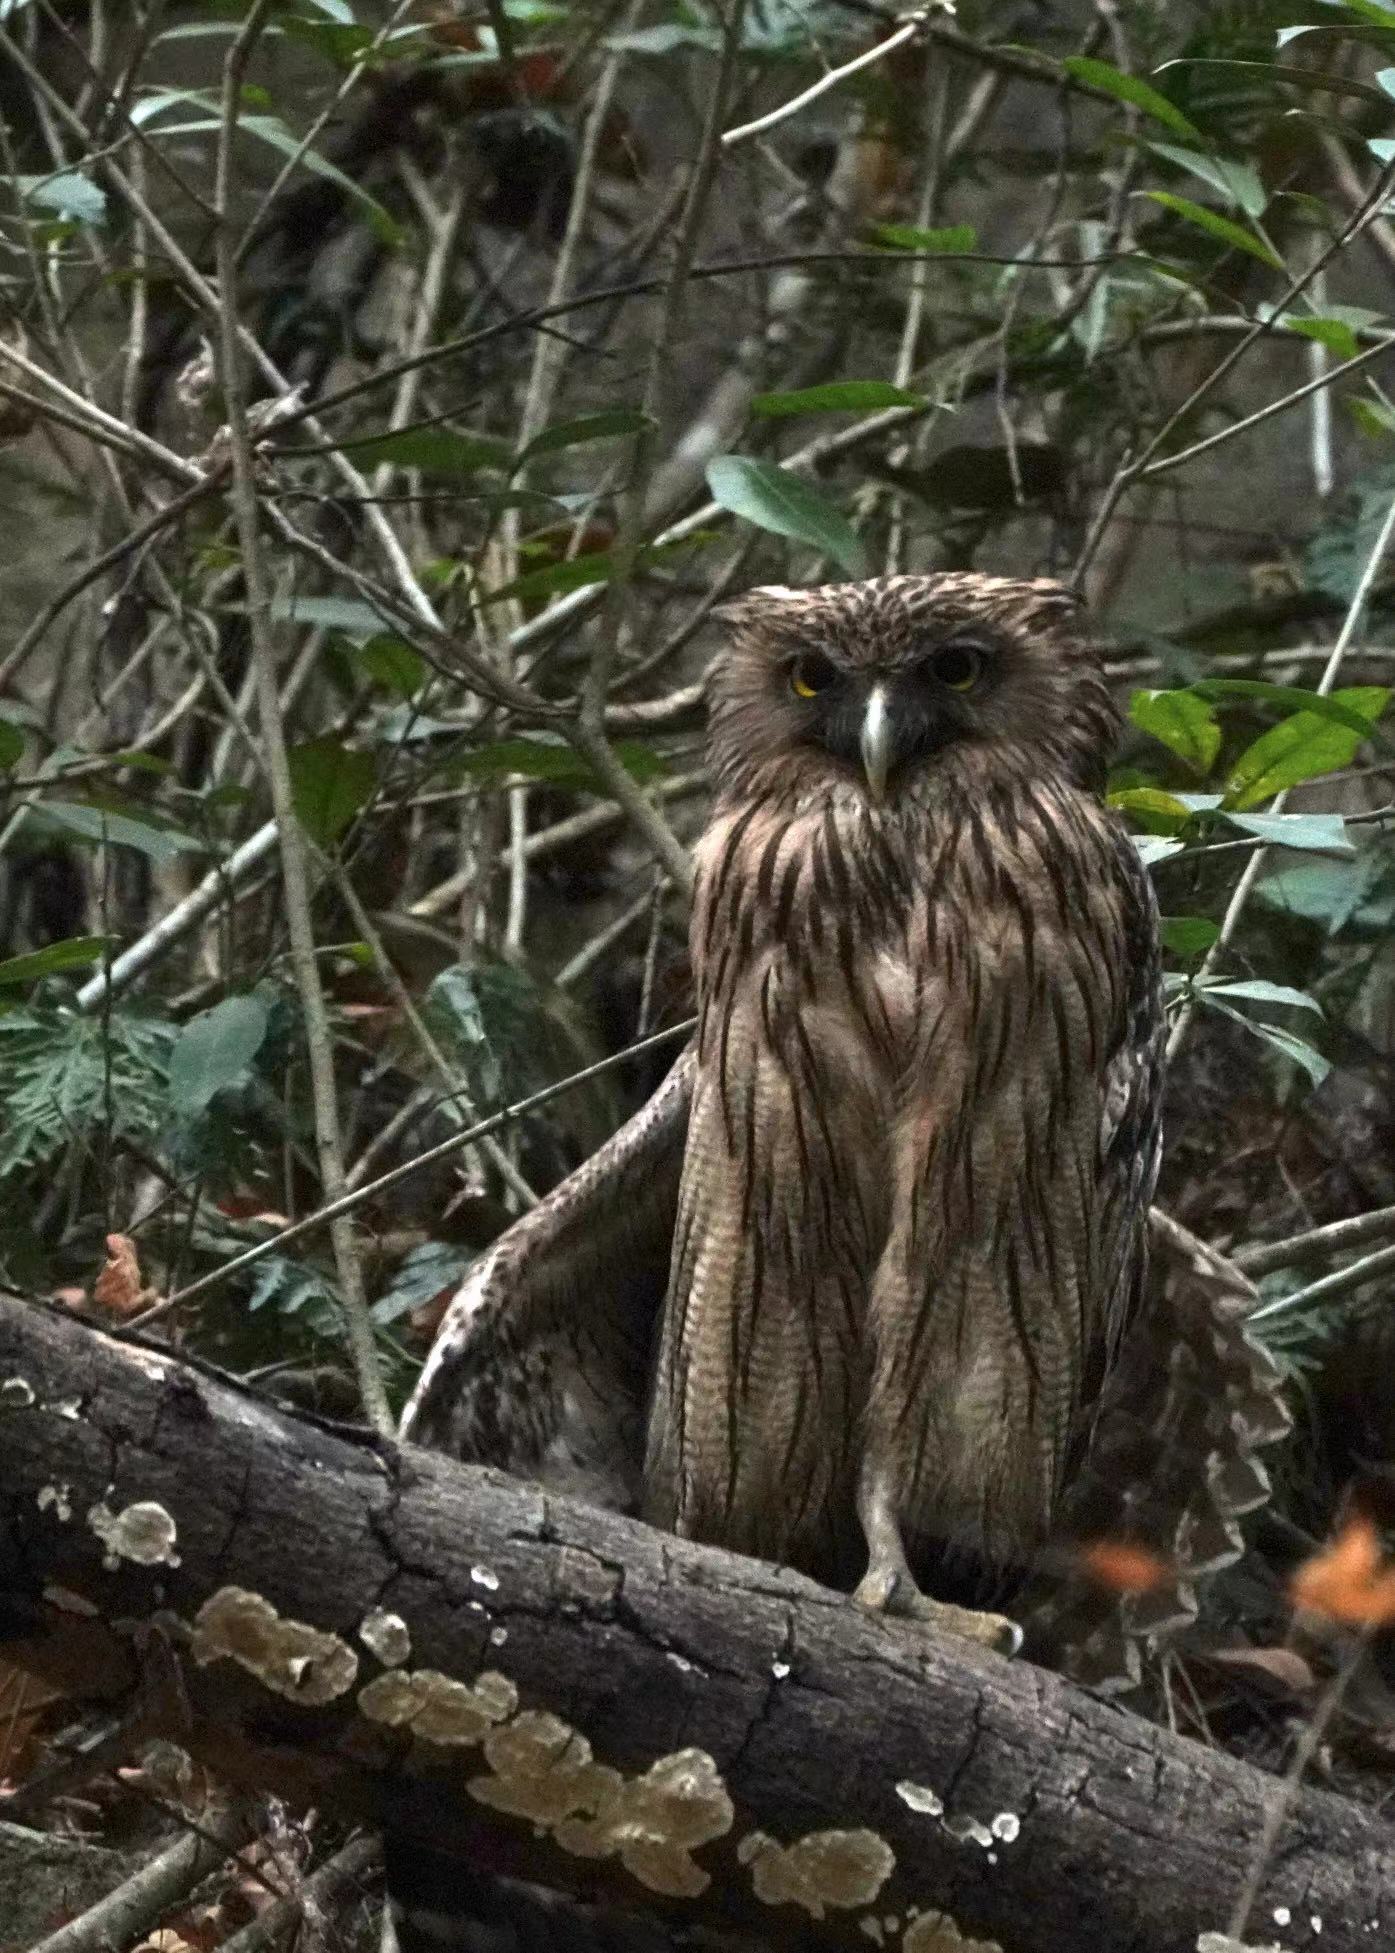 Birdwatcher captures brown fish owls on camera in Shenzhen